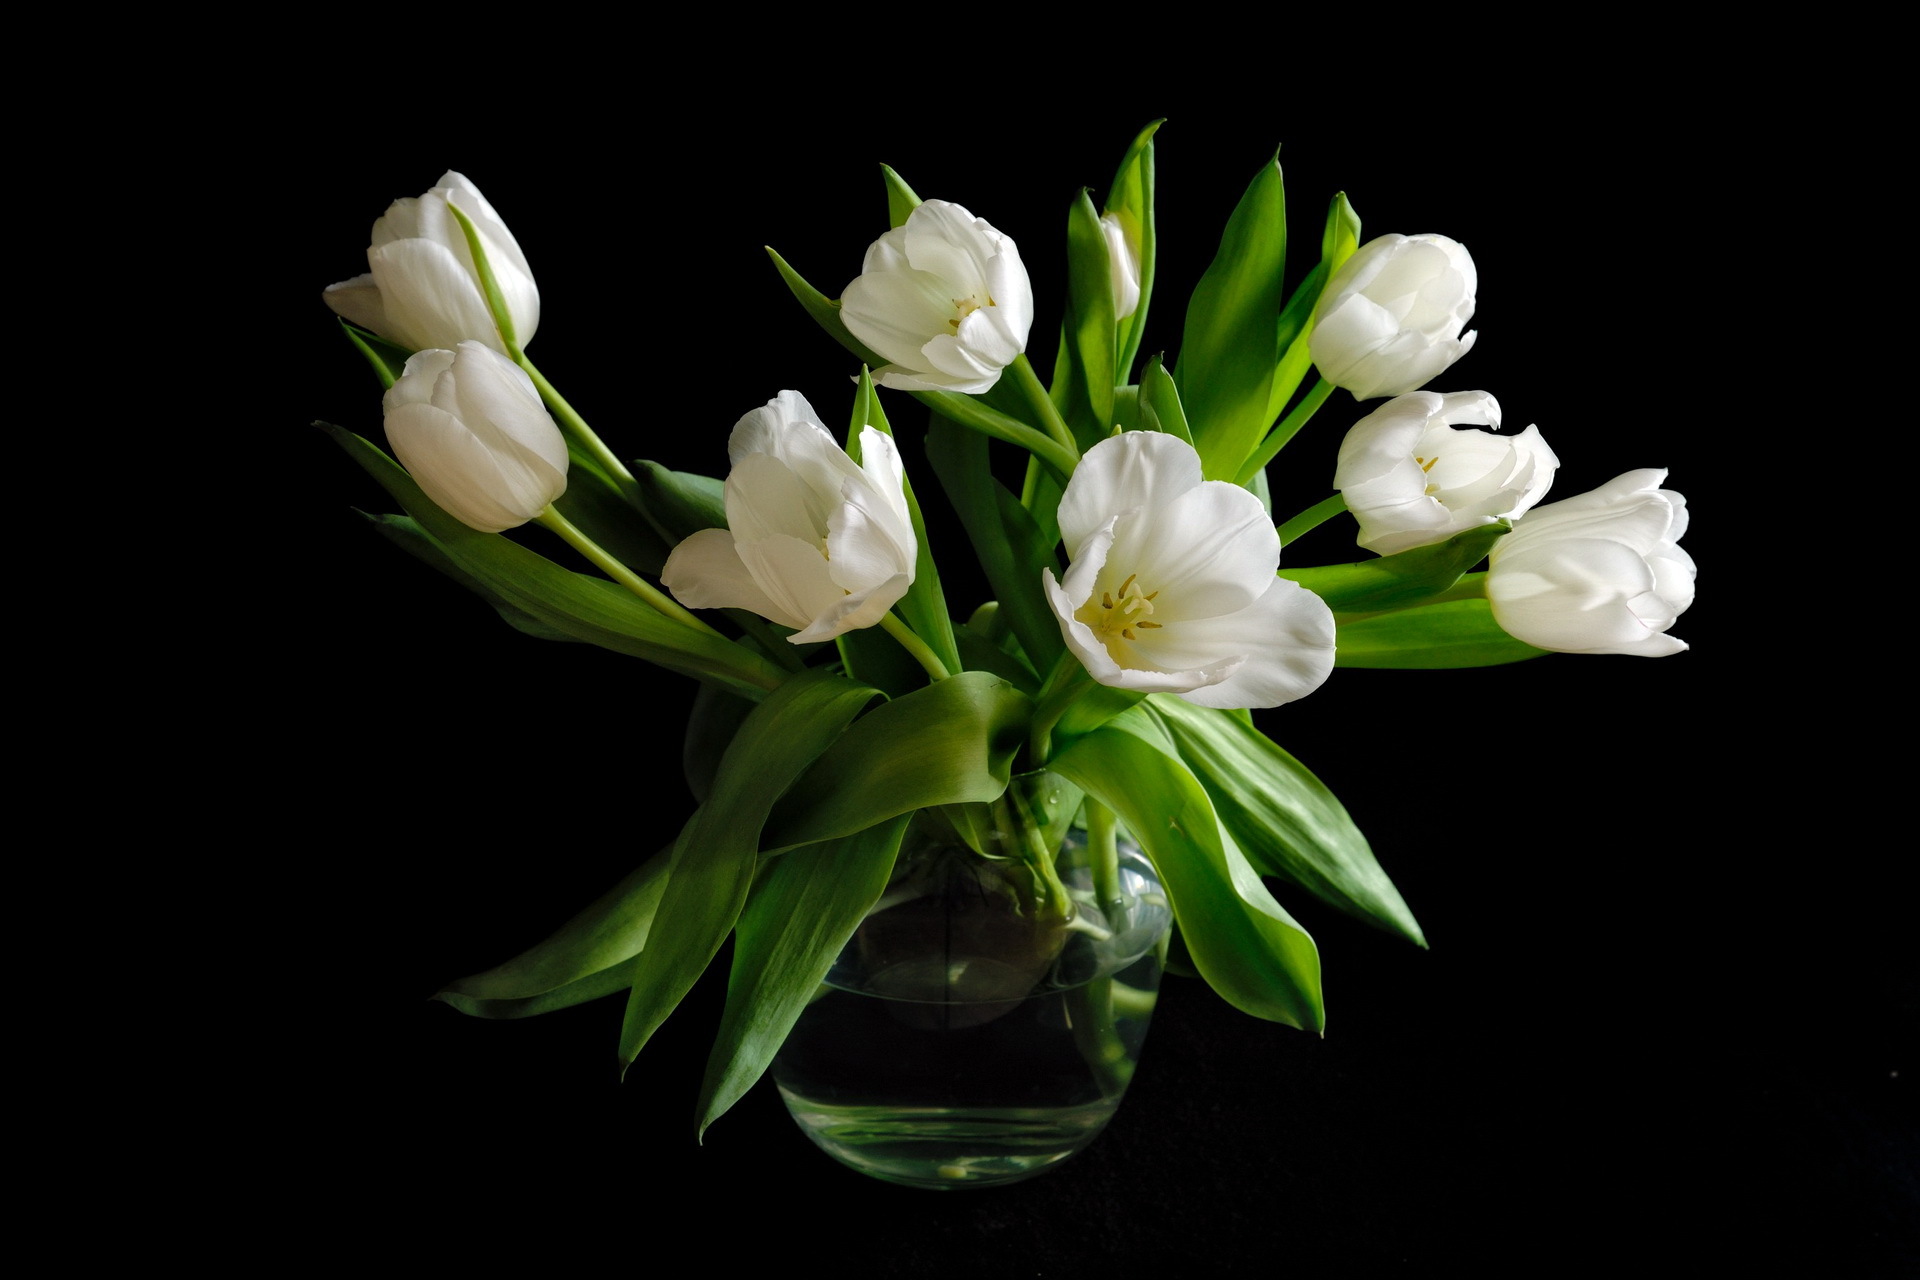 Wallpaper Tulips White Flower Black Background Flowers